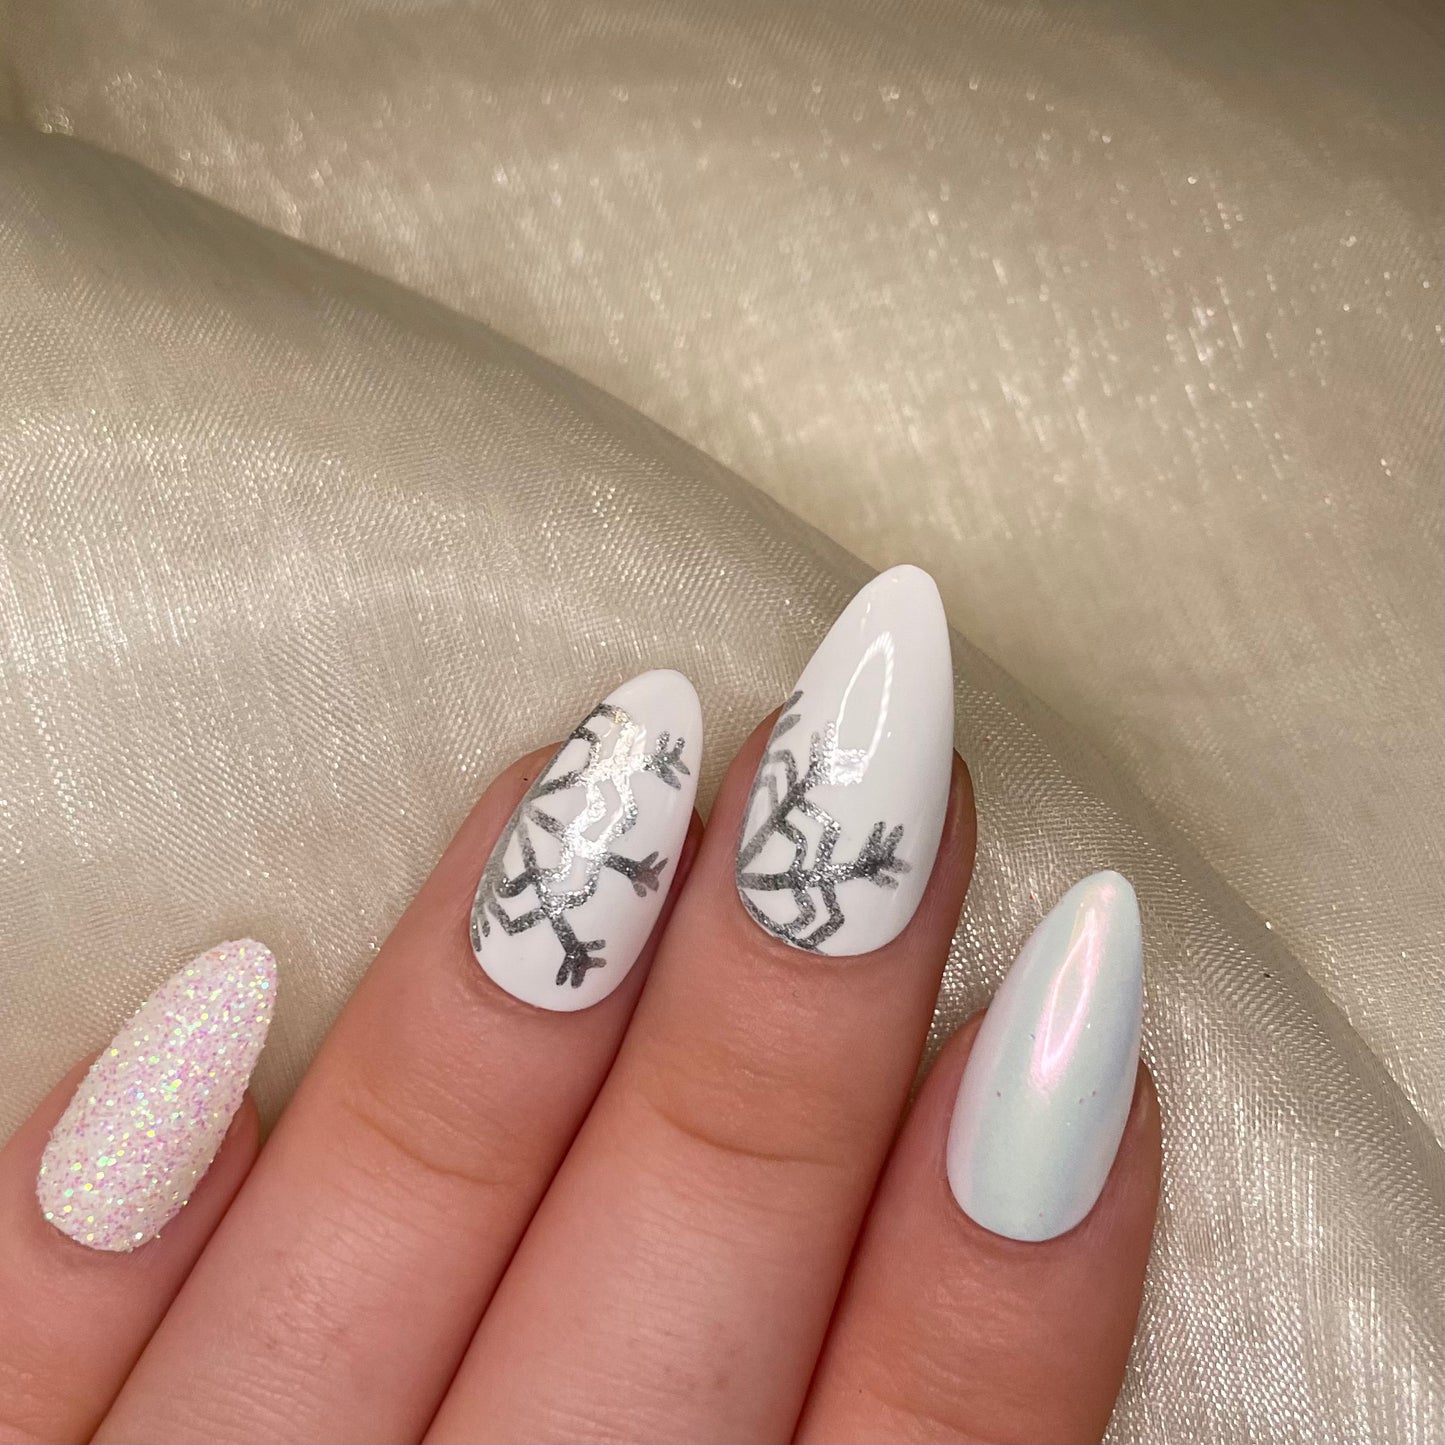 White Snowflake Glitter and Chrome Almond Nails